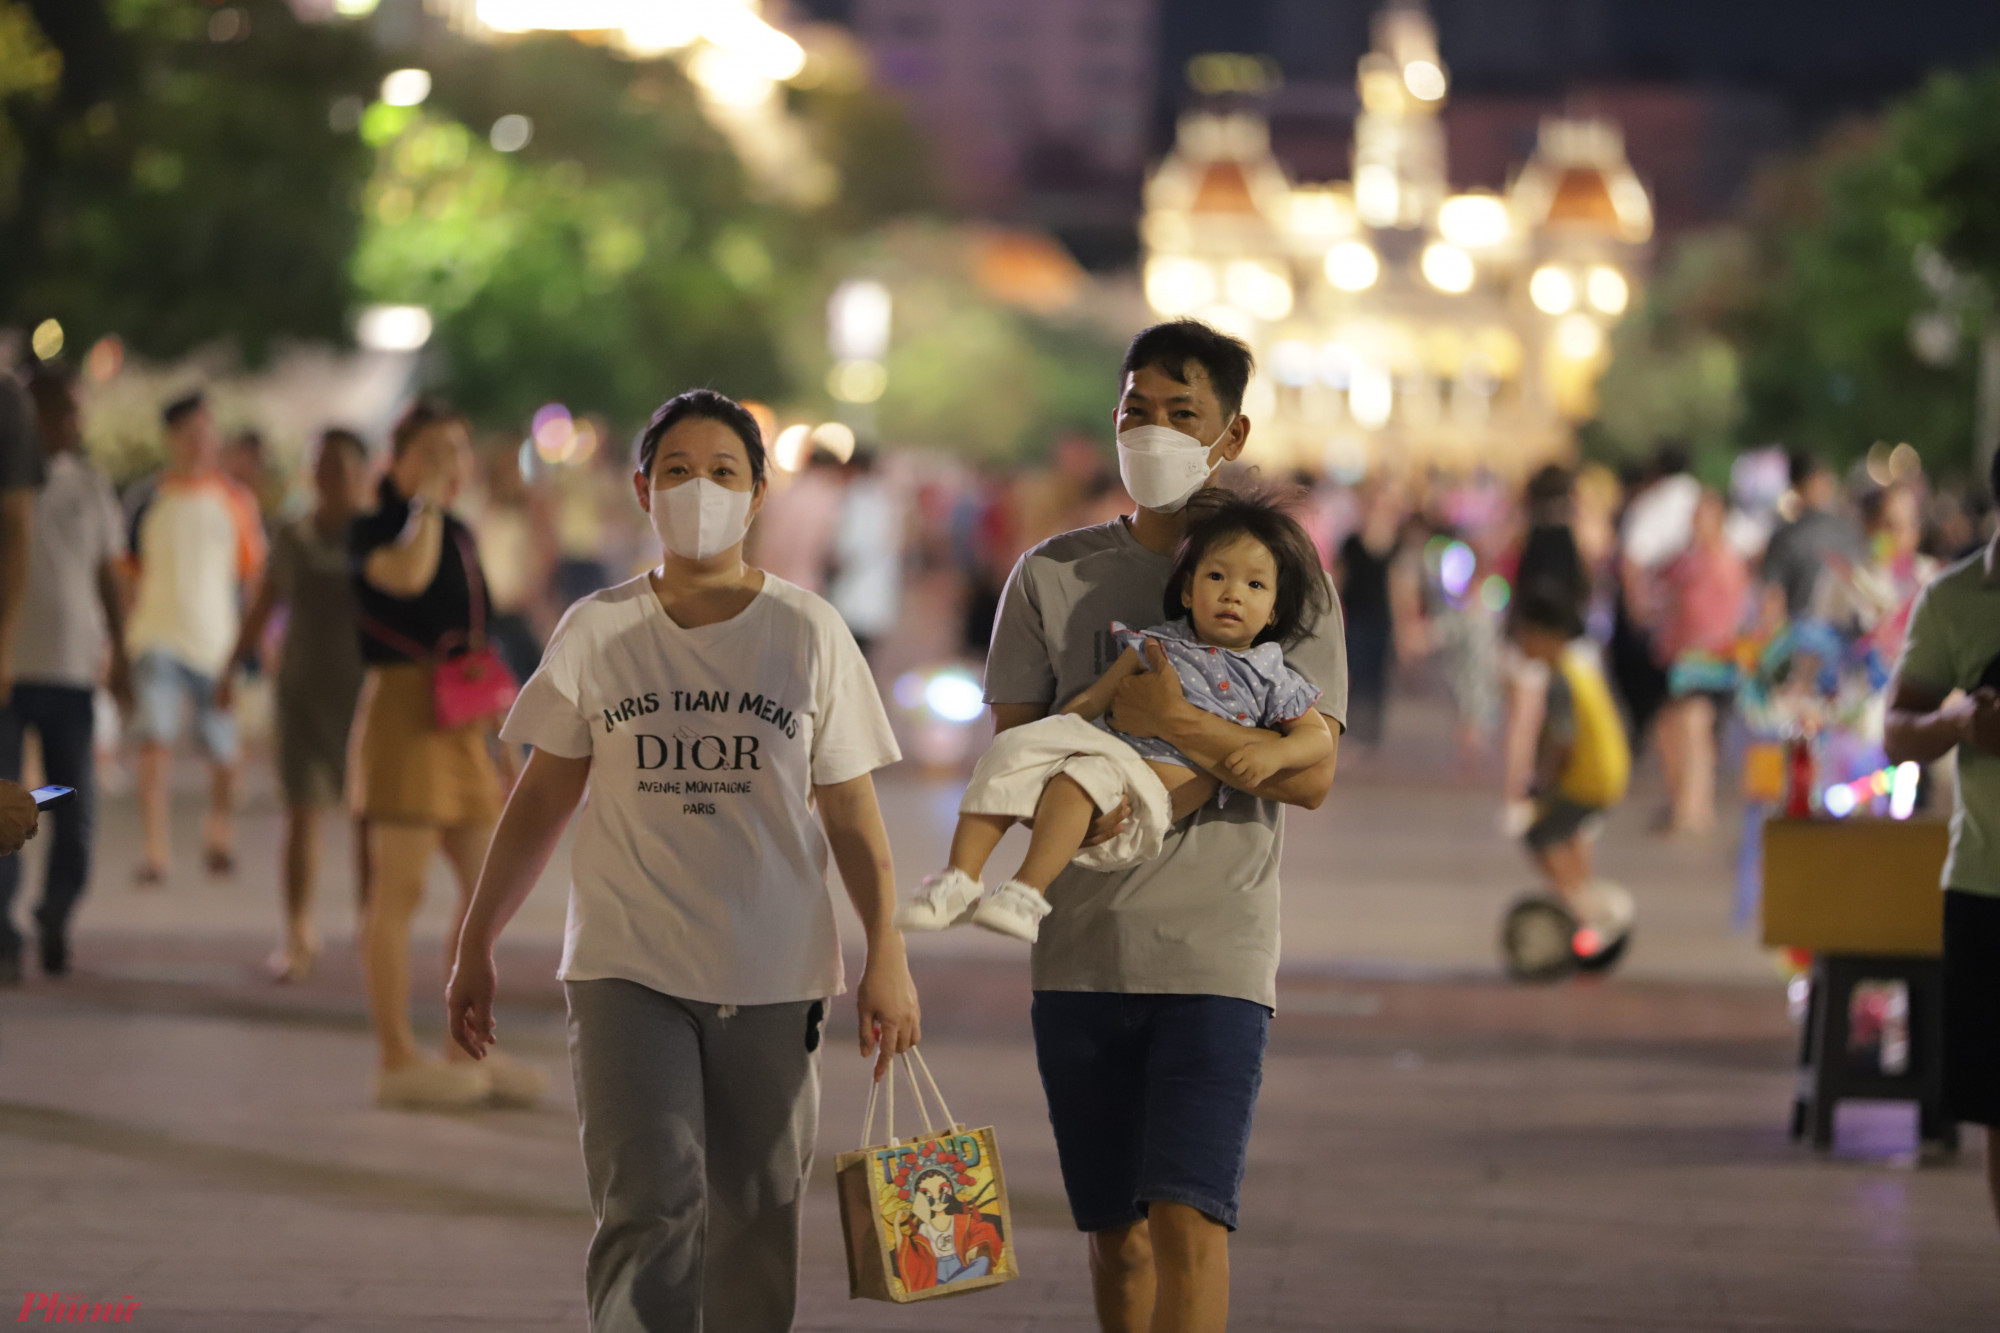 Khoảng hơn 7g tối, khu vực phố đi bộ Nguyễn Huệ đã bắt đầu nhộn nhịp, nhiều gia đình cùng nhau dạo phố vui chơi trong ngày lễ.